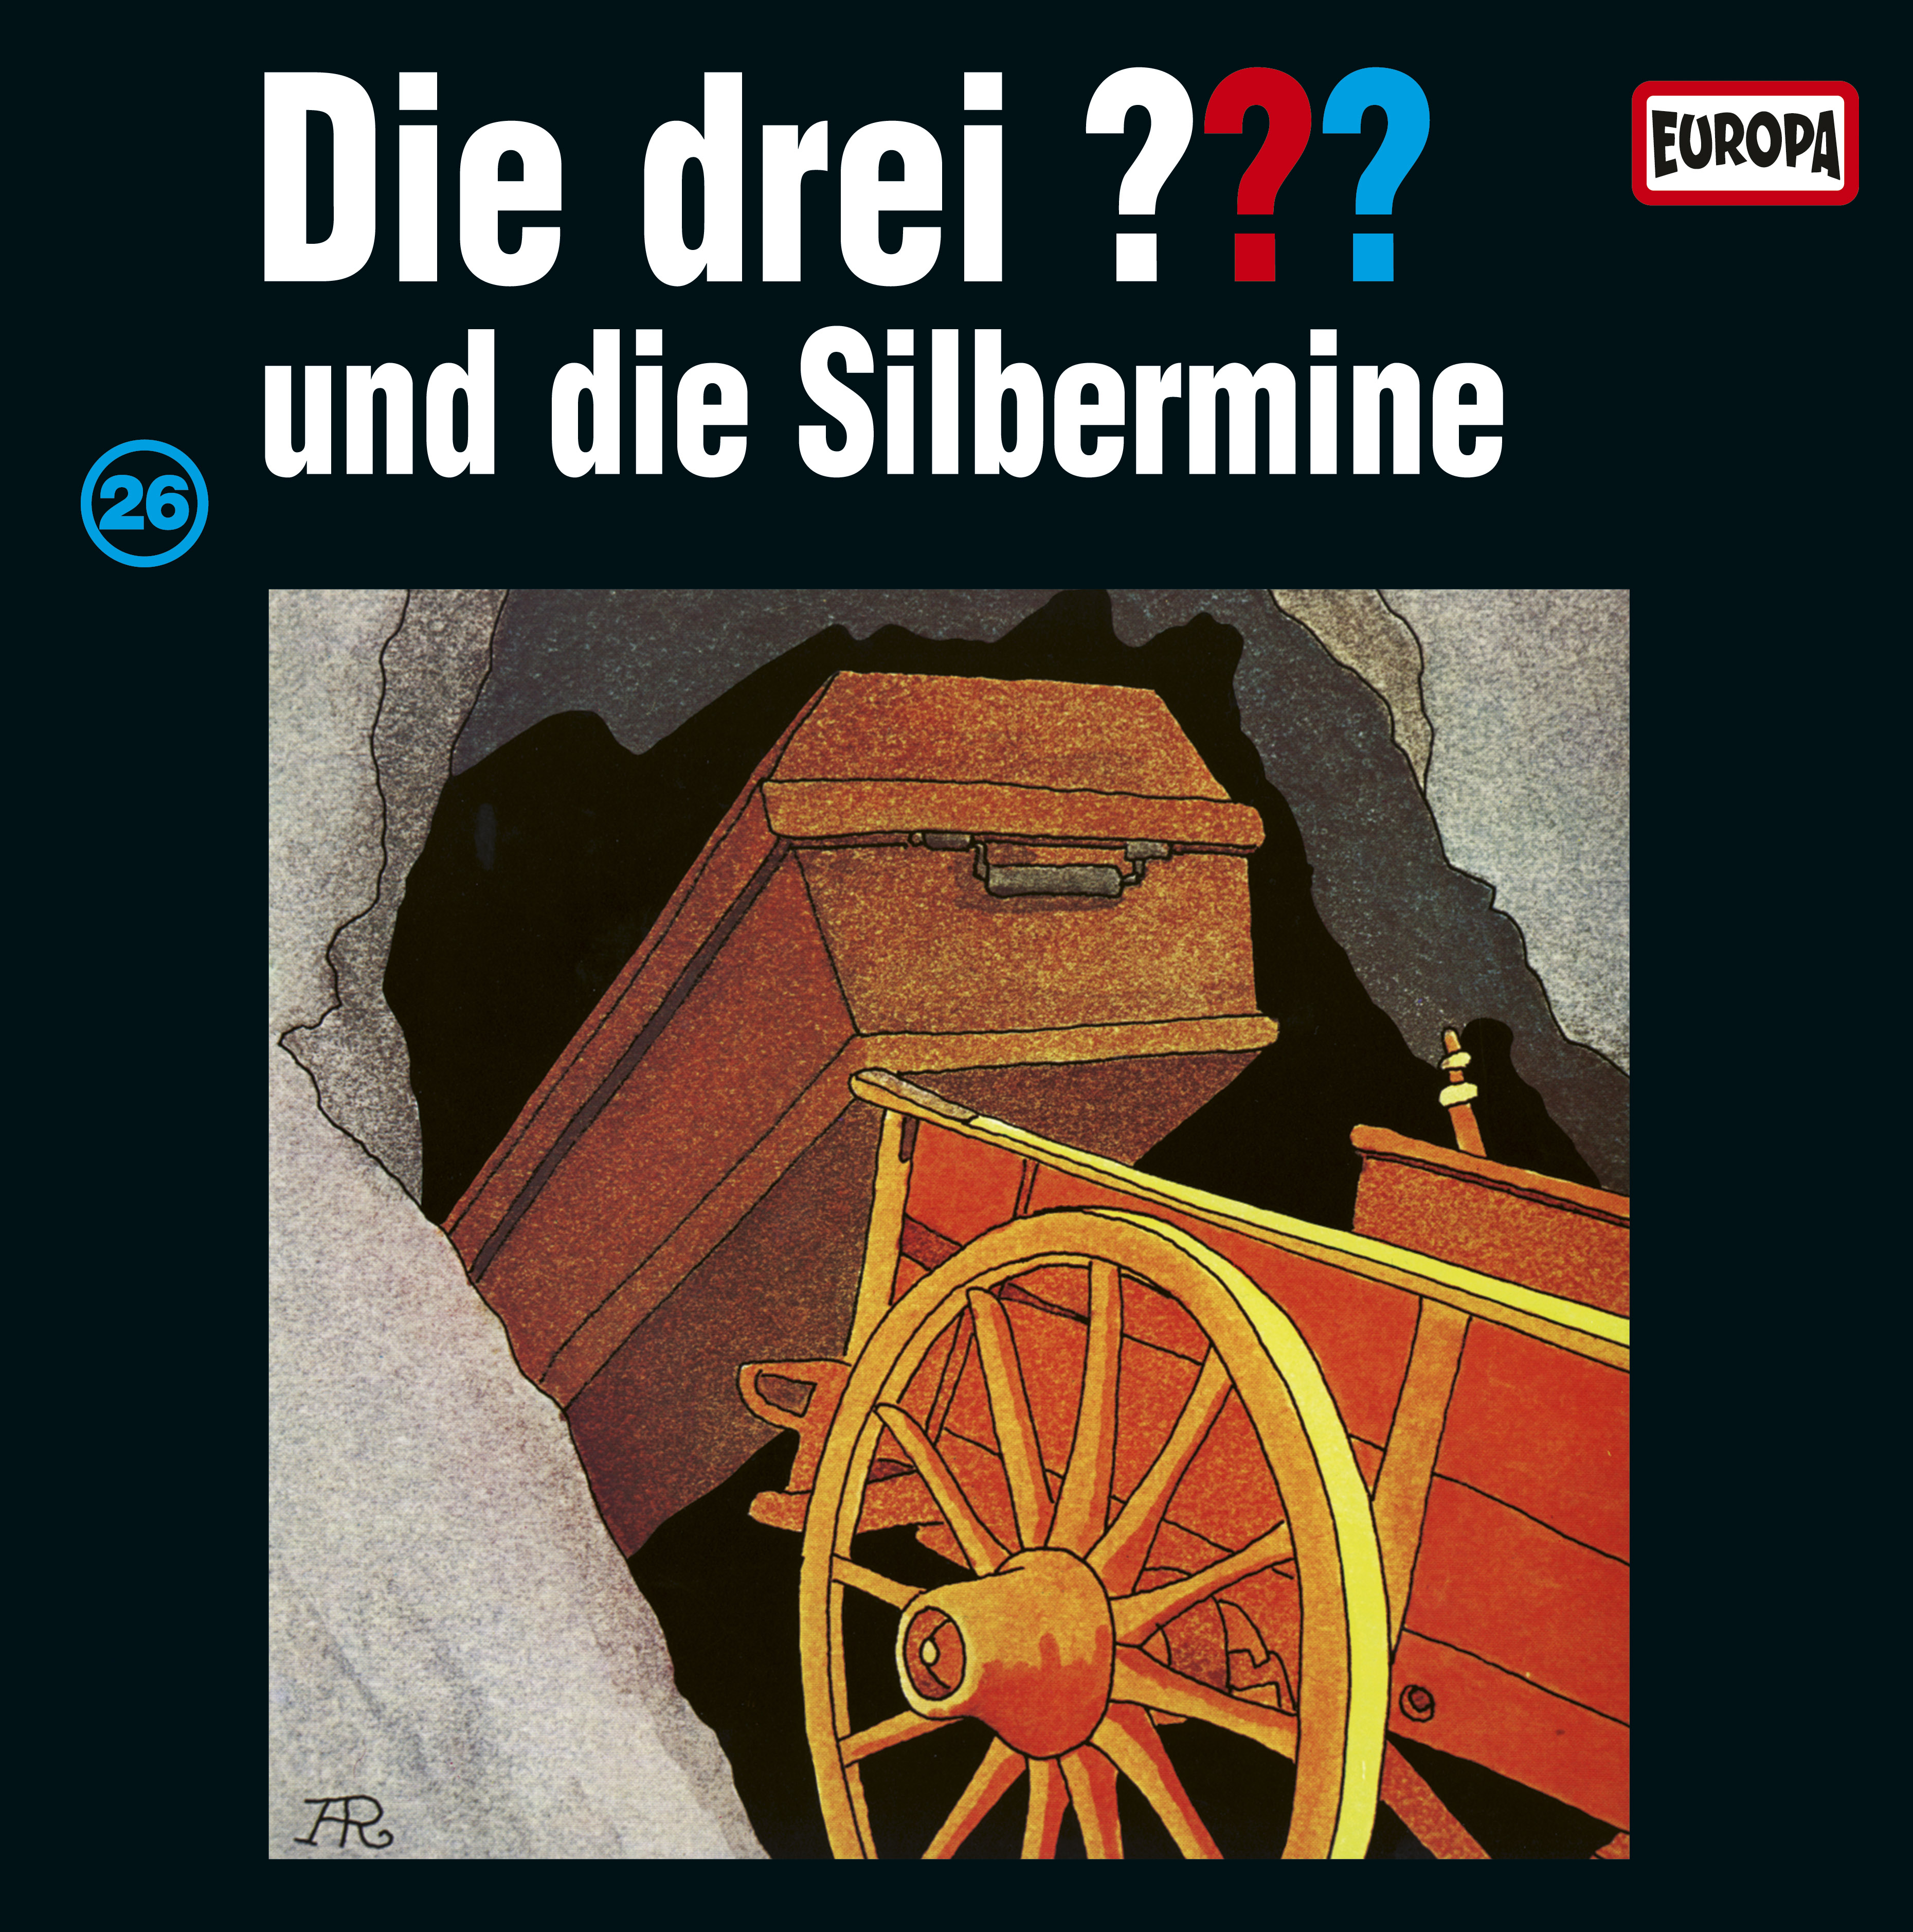 Die drei ???: Die Silbermine (Picture Vinyl)